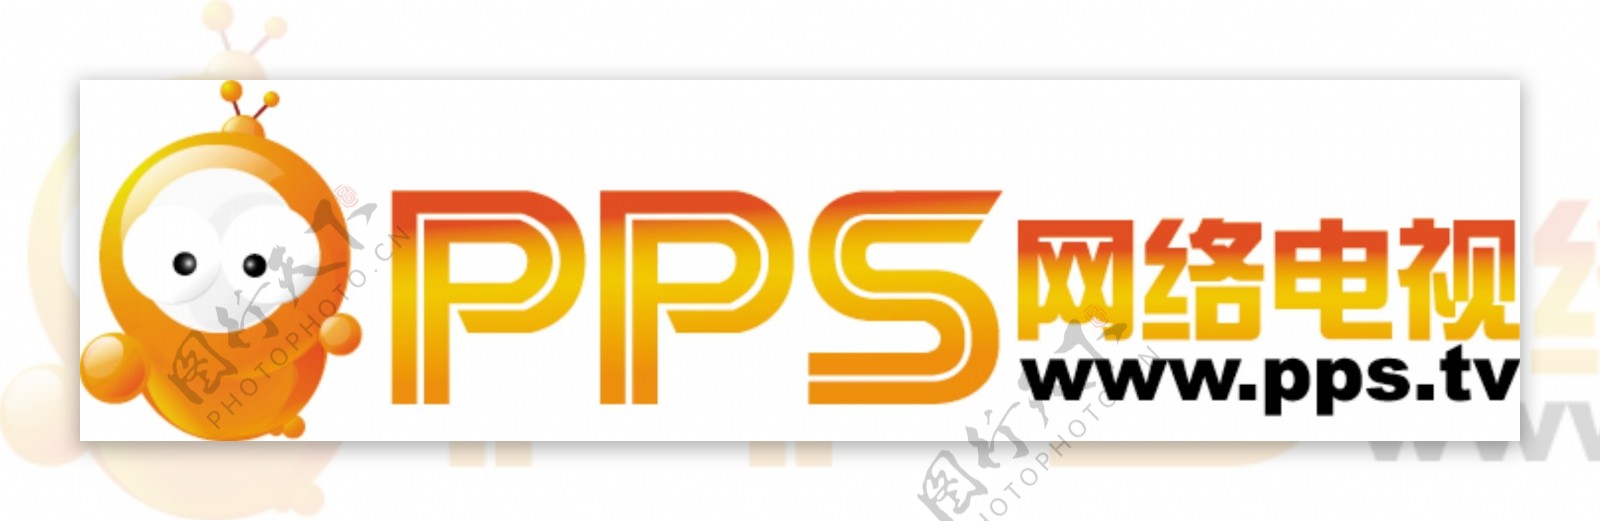 PPS网络电视标识图片